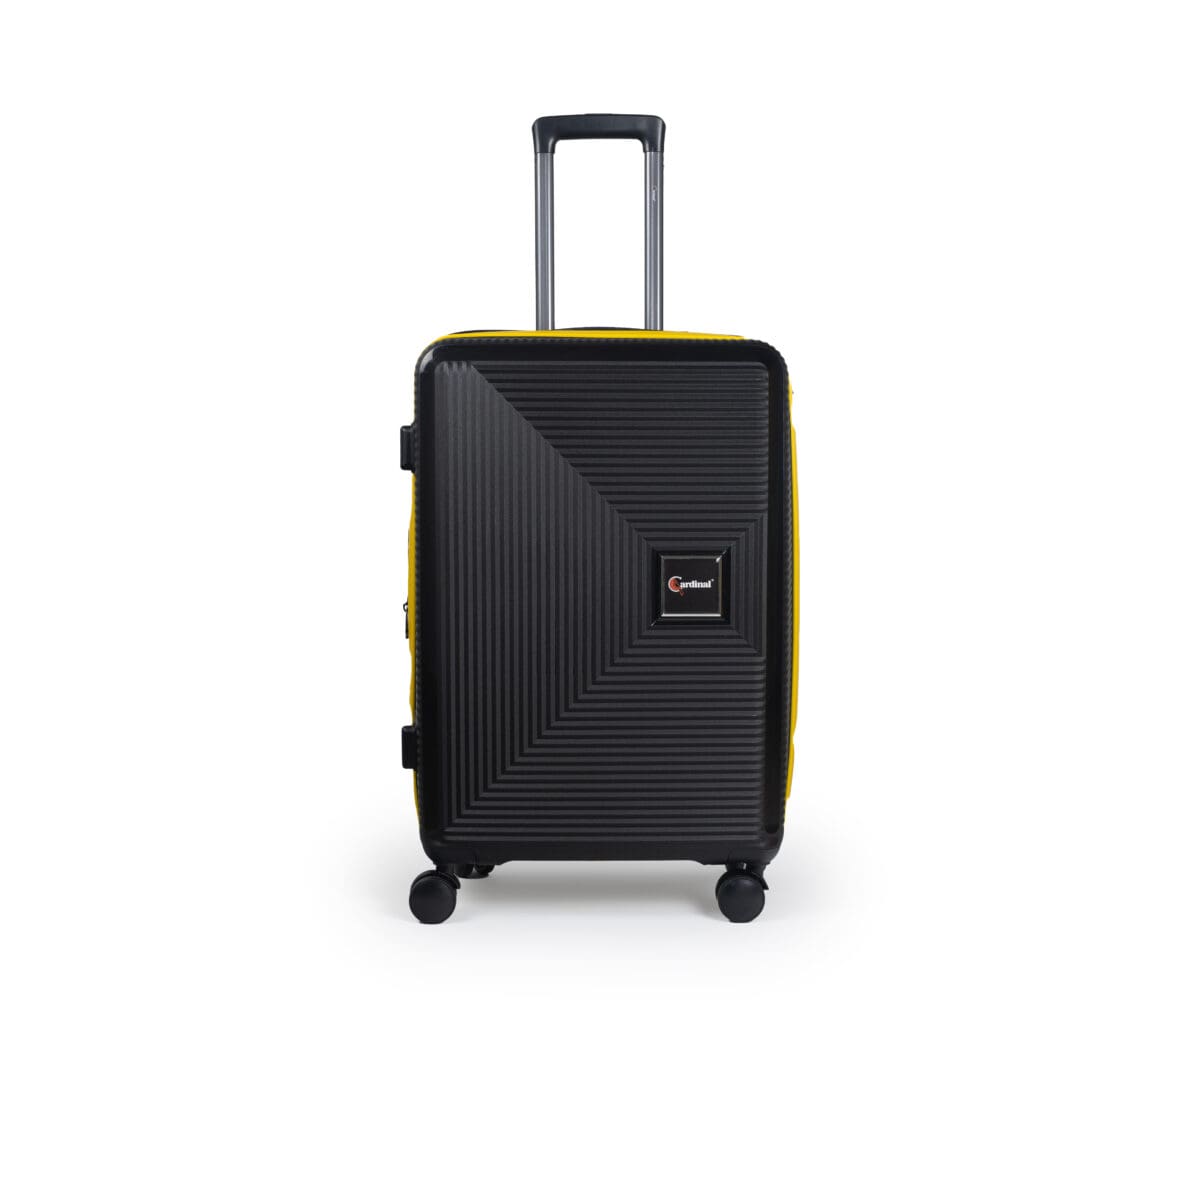 Βαλίτσα μεσαία με tsa lock διπλά ροδάκια από πολυπροπυλένιο άθραυστο υλικό και επέκταση σε μαύρο χρώμα με κίτρινες λωρίδες .